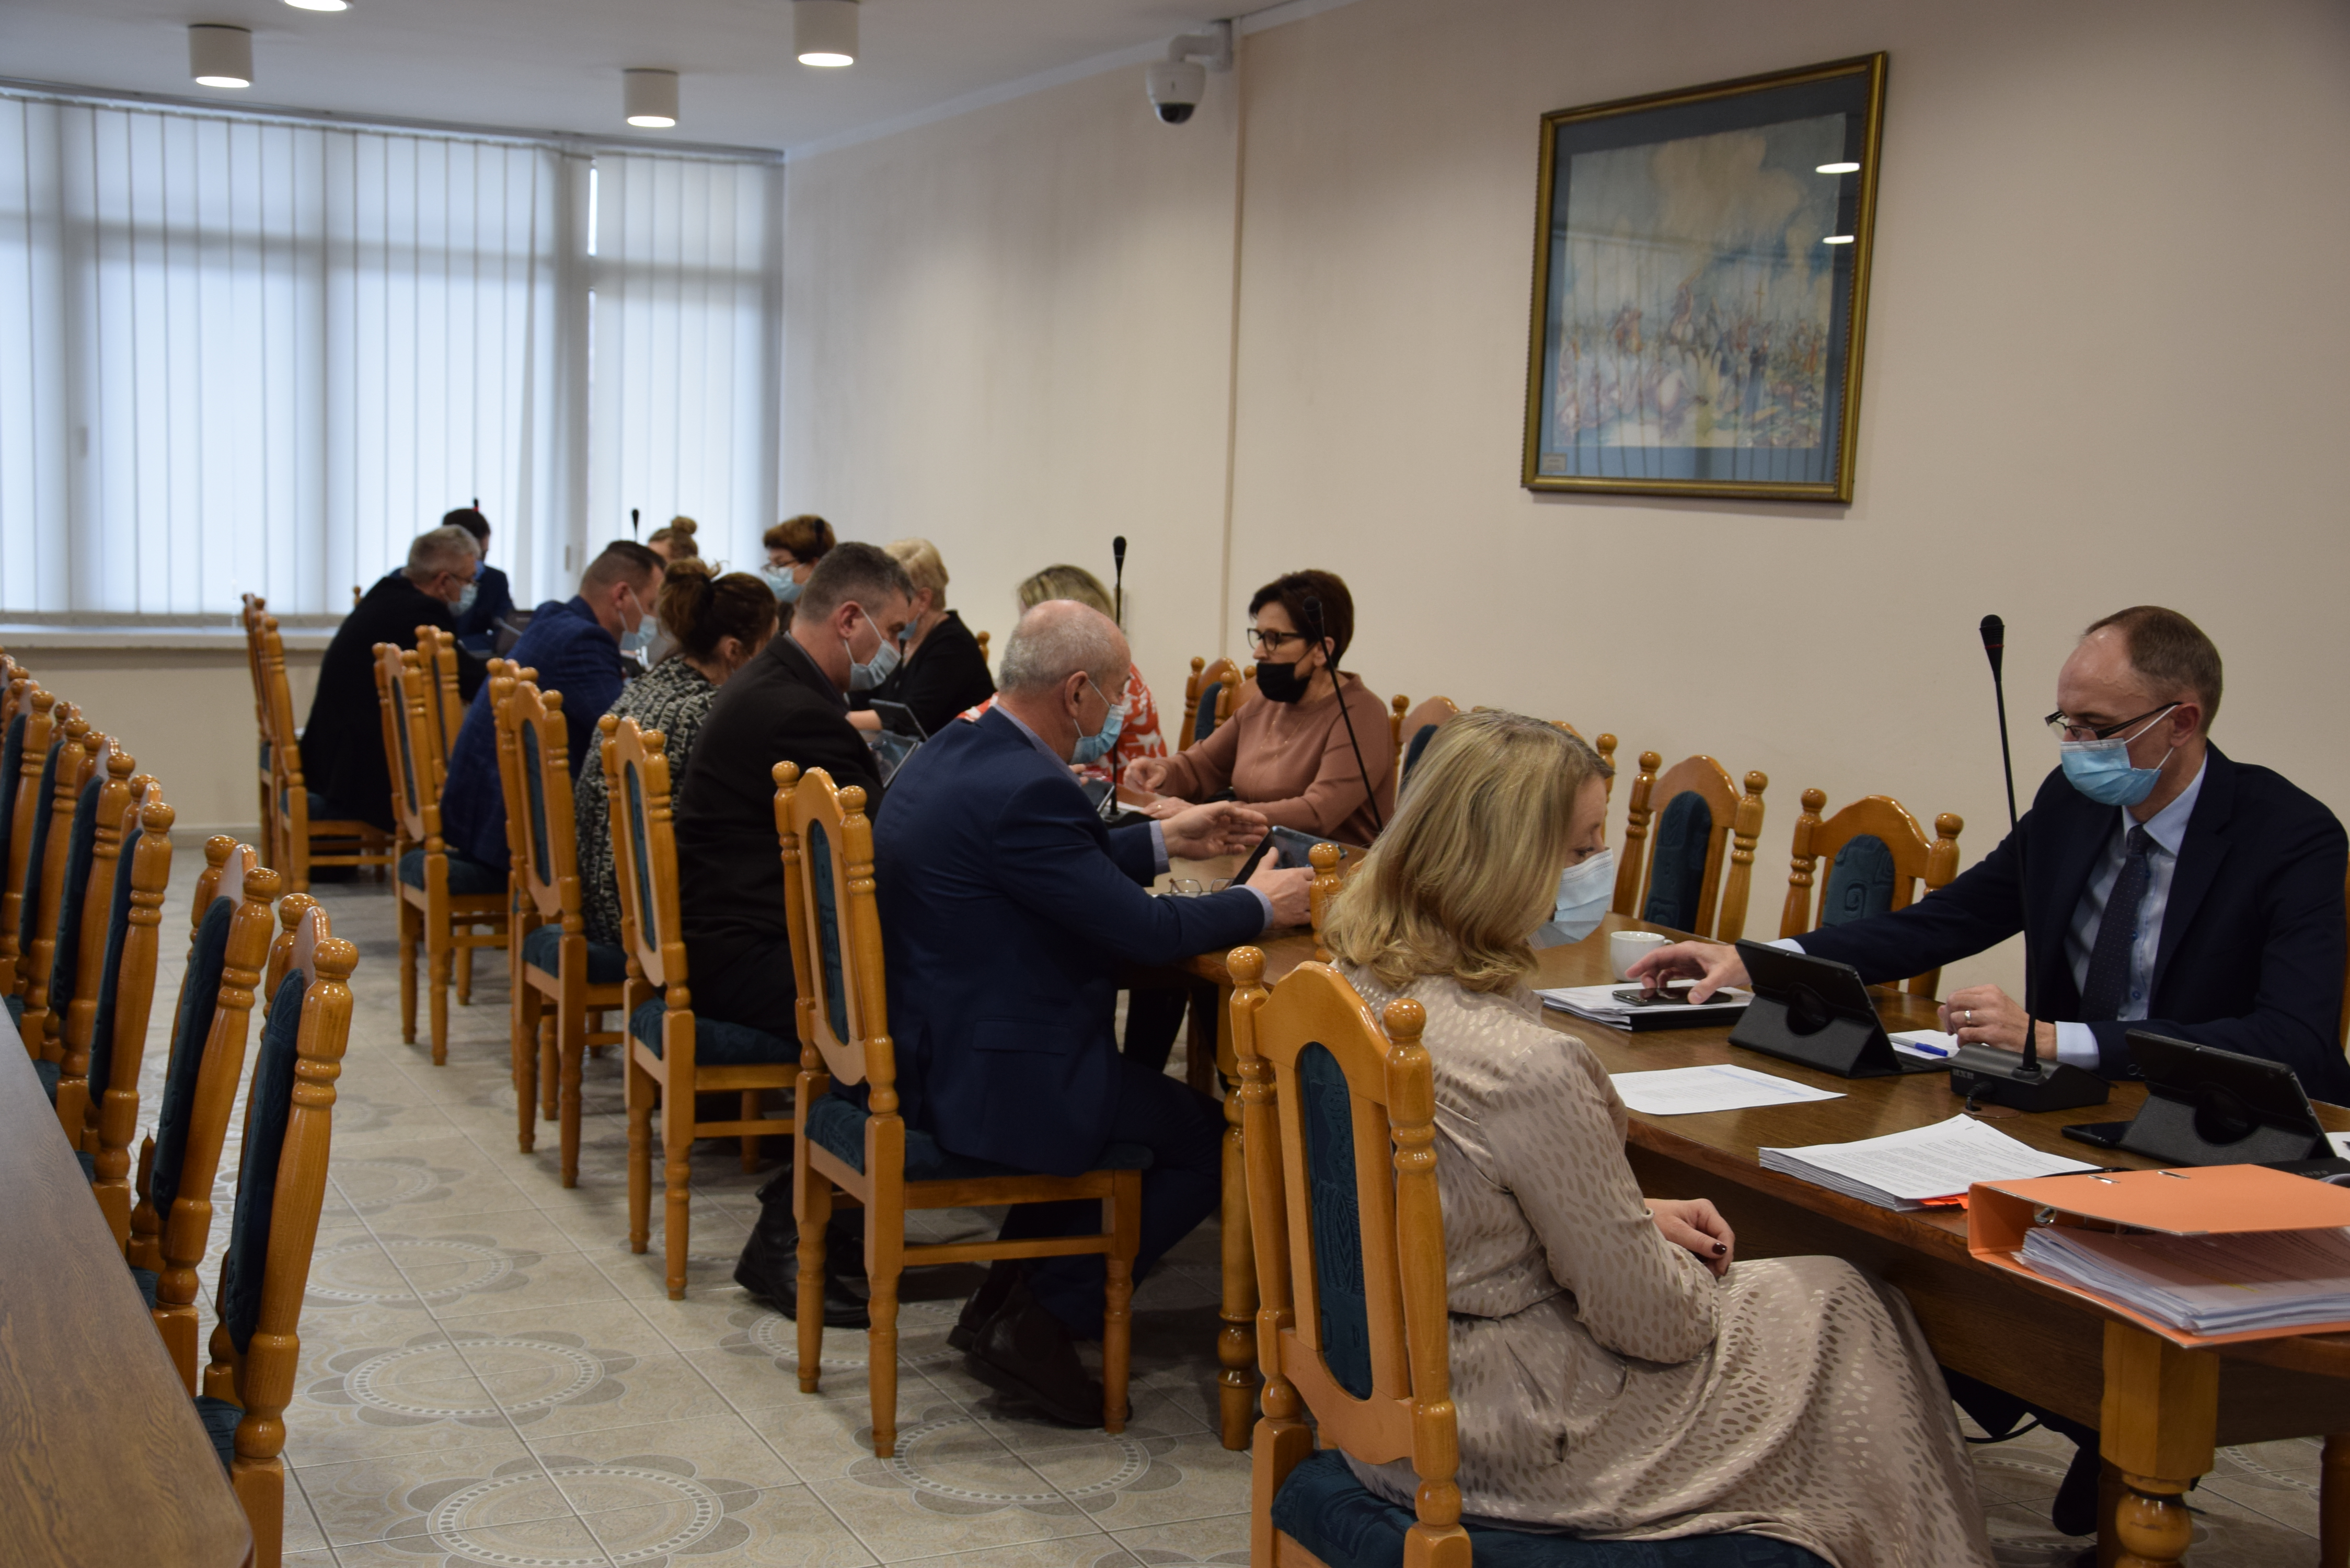 Radni uchwalili budżet gminy Bodzentyn na 2022 rok